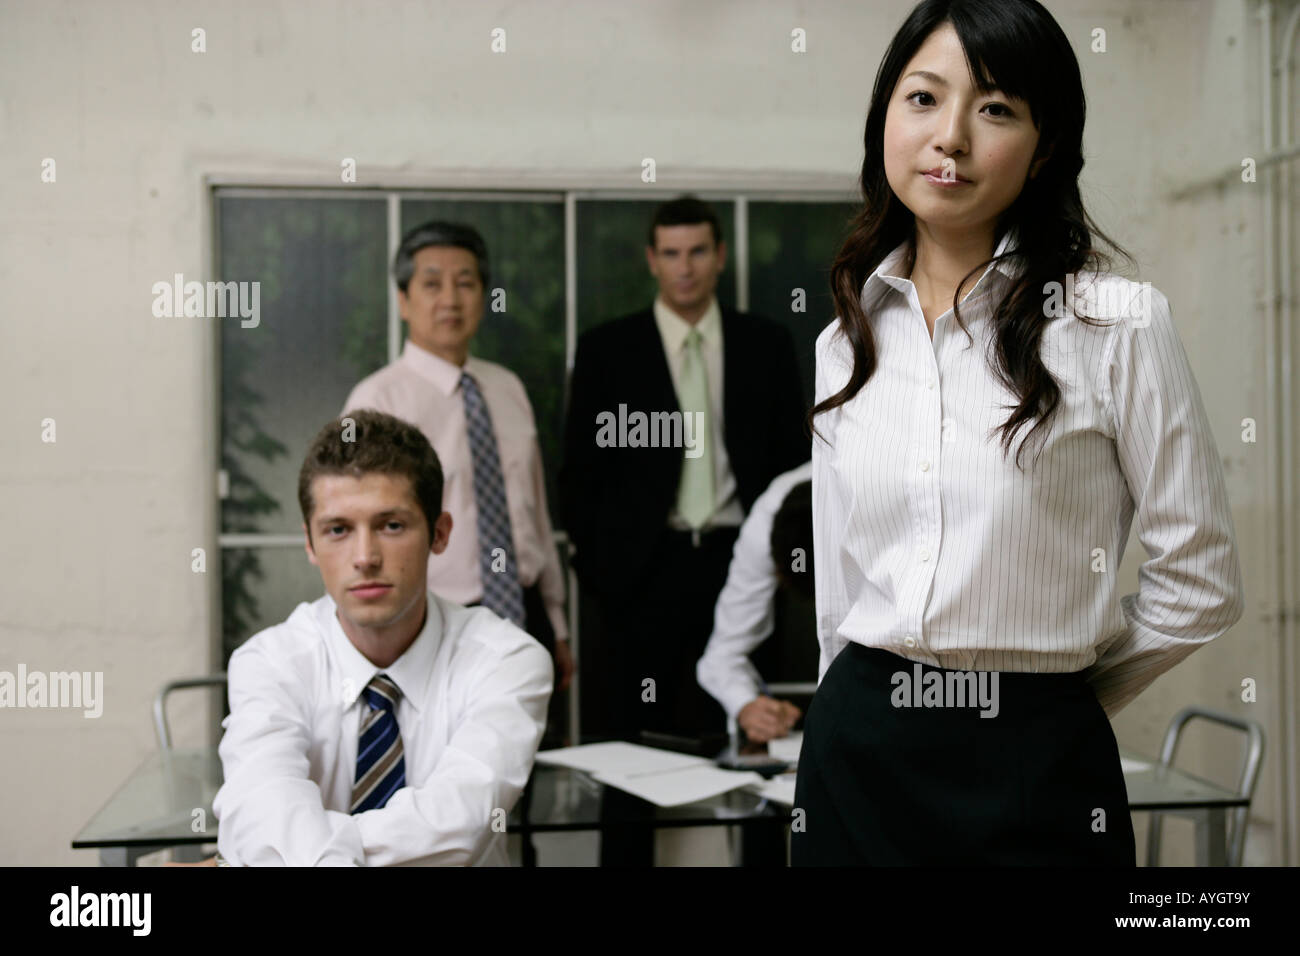 Portrait de cinq personnes debout dans la salle de conférence Banque D'Images